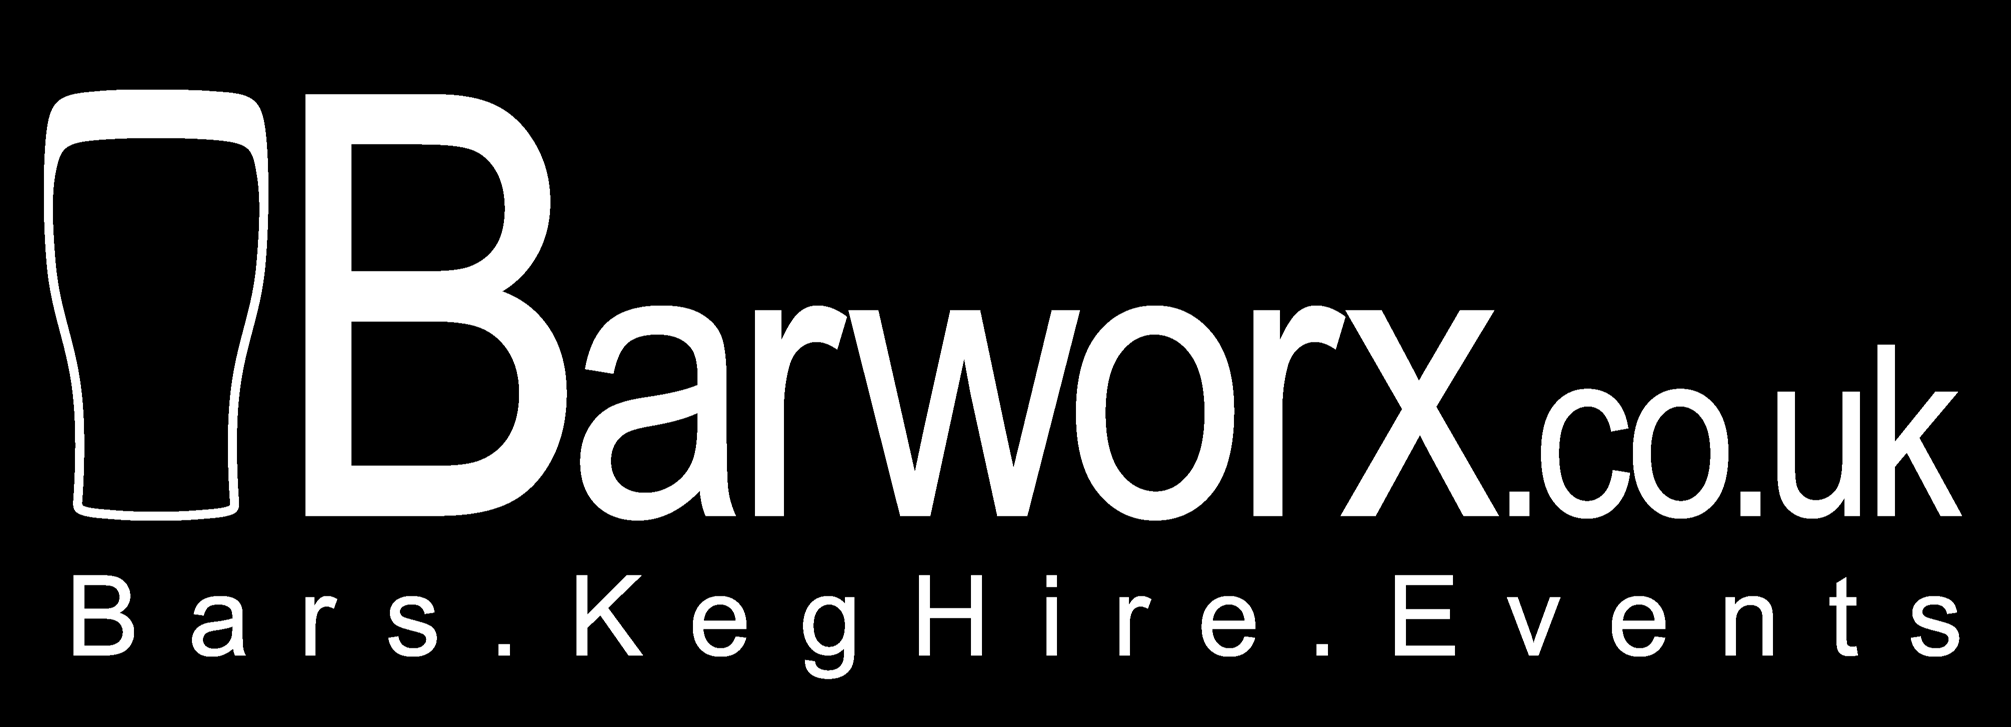 Barworx.co.uk